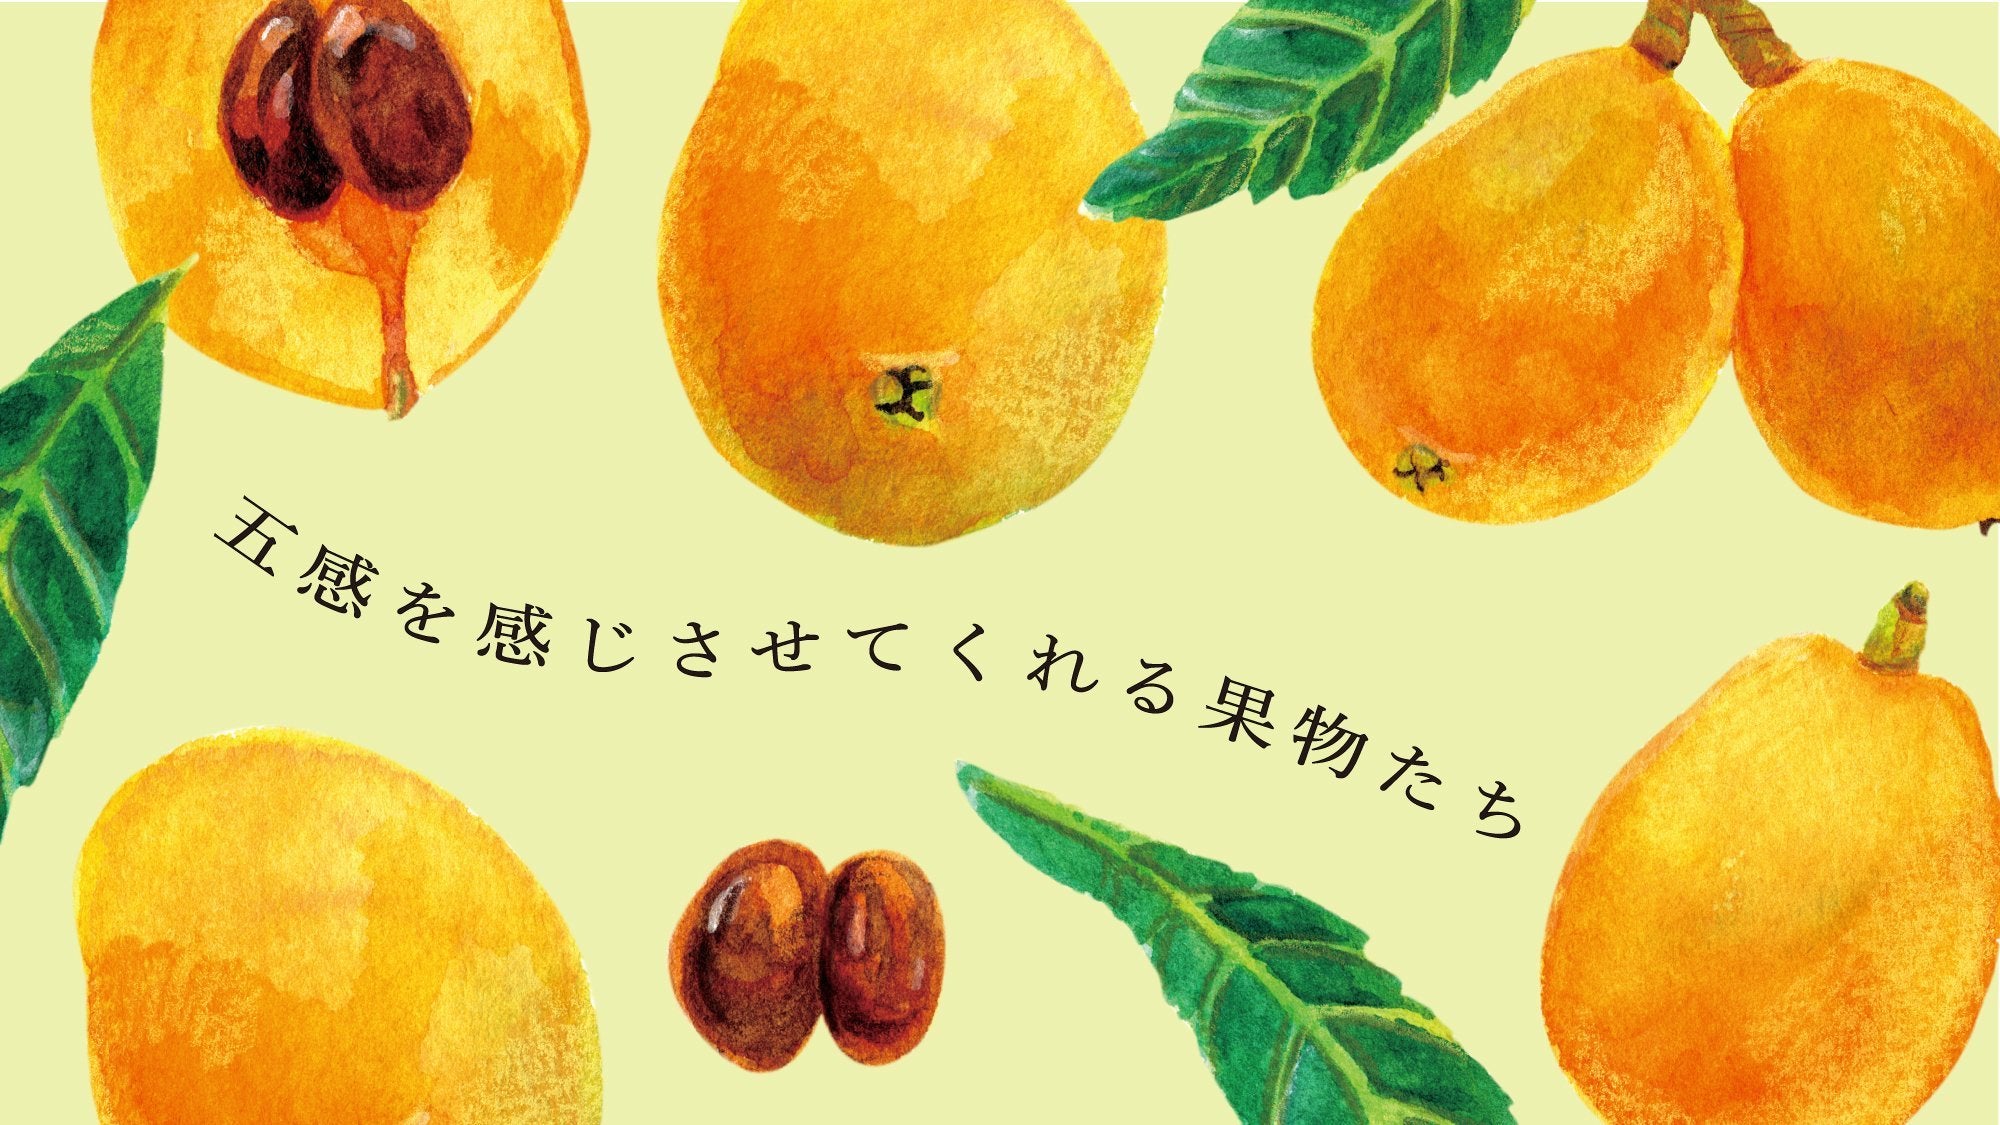 立ち読み】TTJ VOL.25『新緑の季節に果物を』 – 煎茶堂東京オンライン